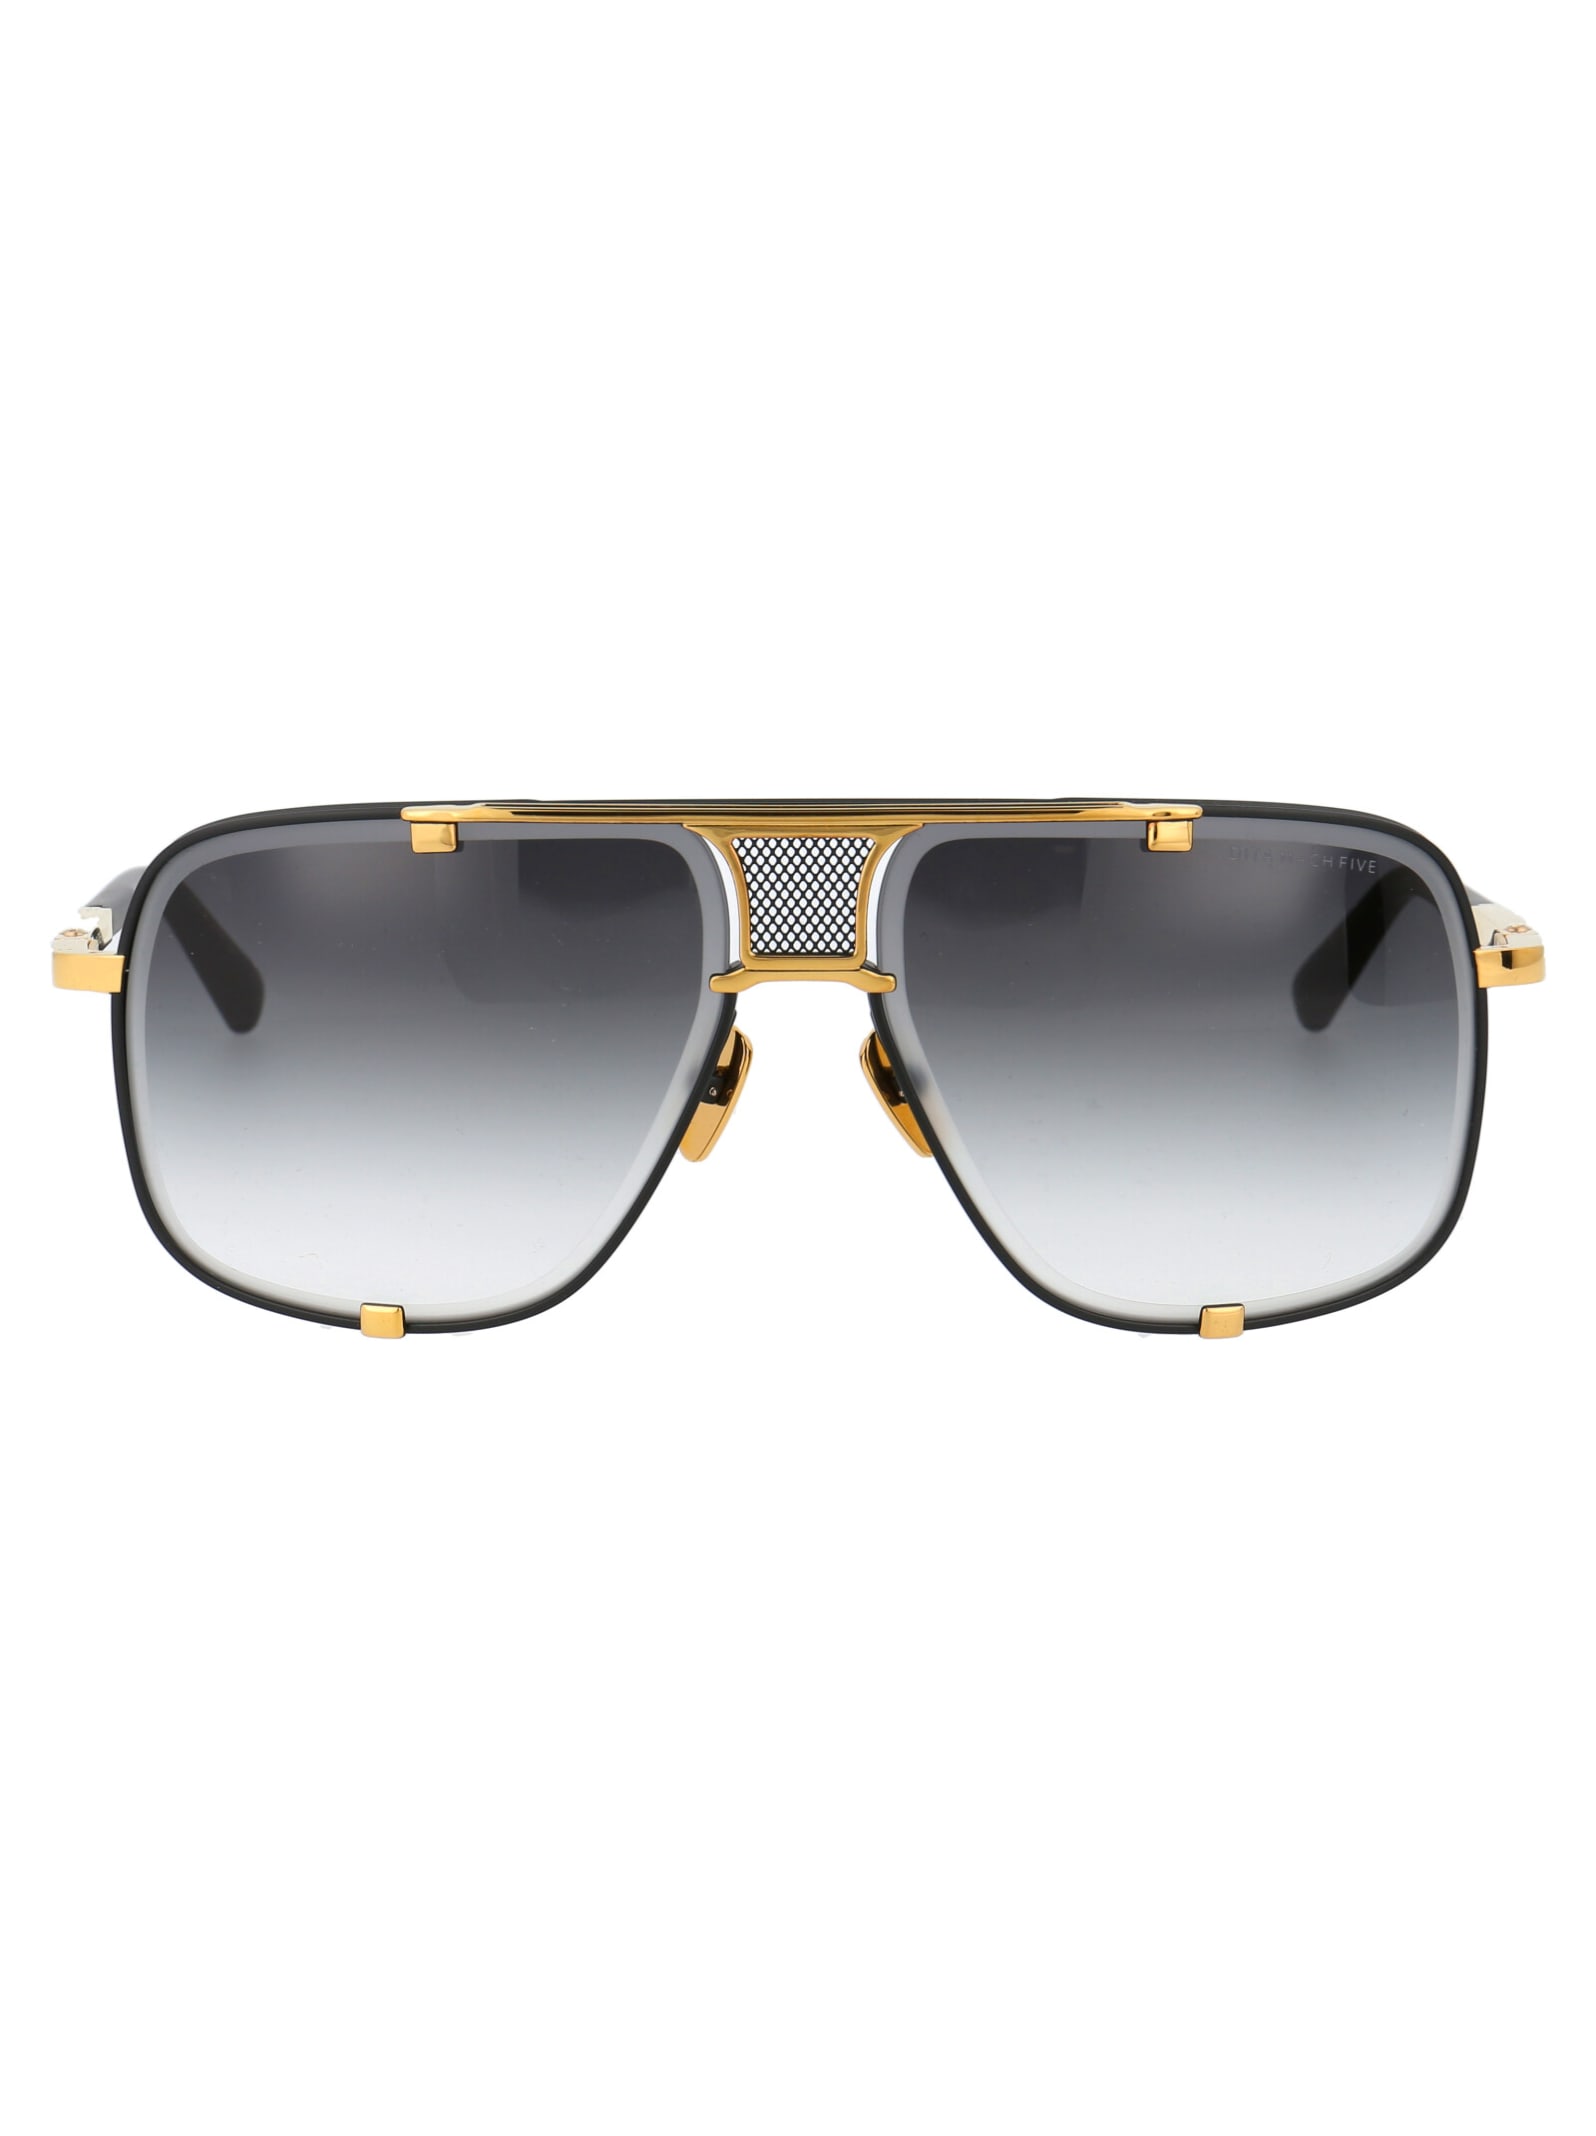 Mach-five Sunglasses